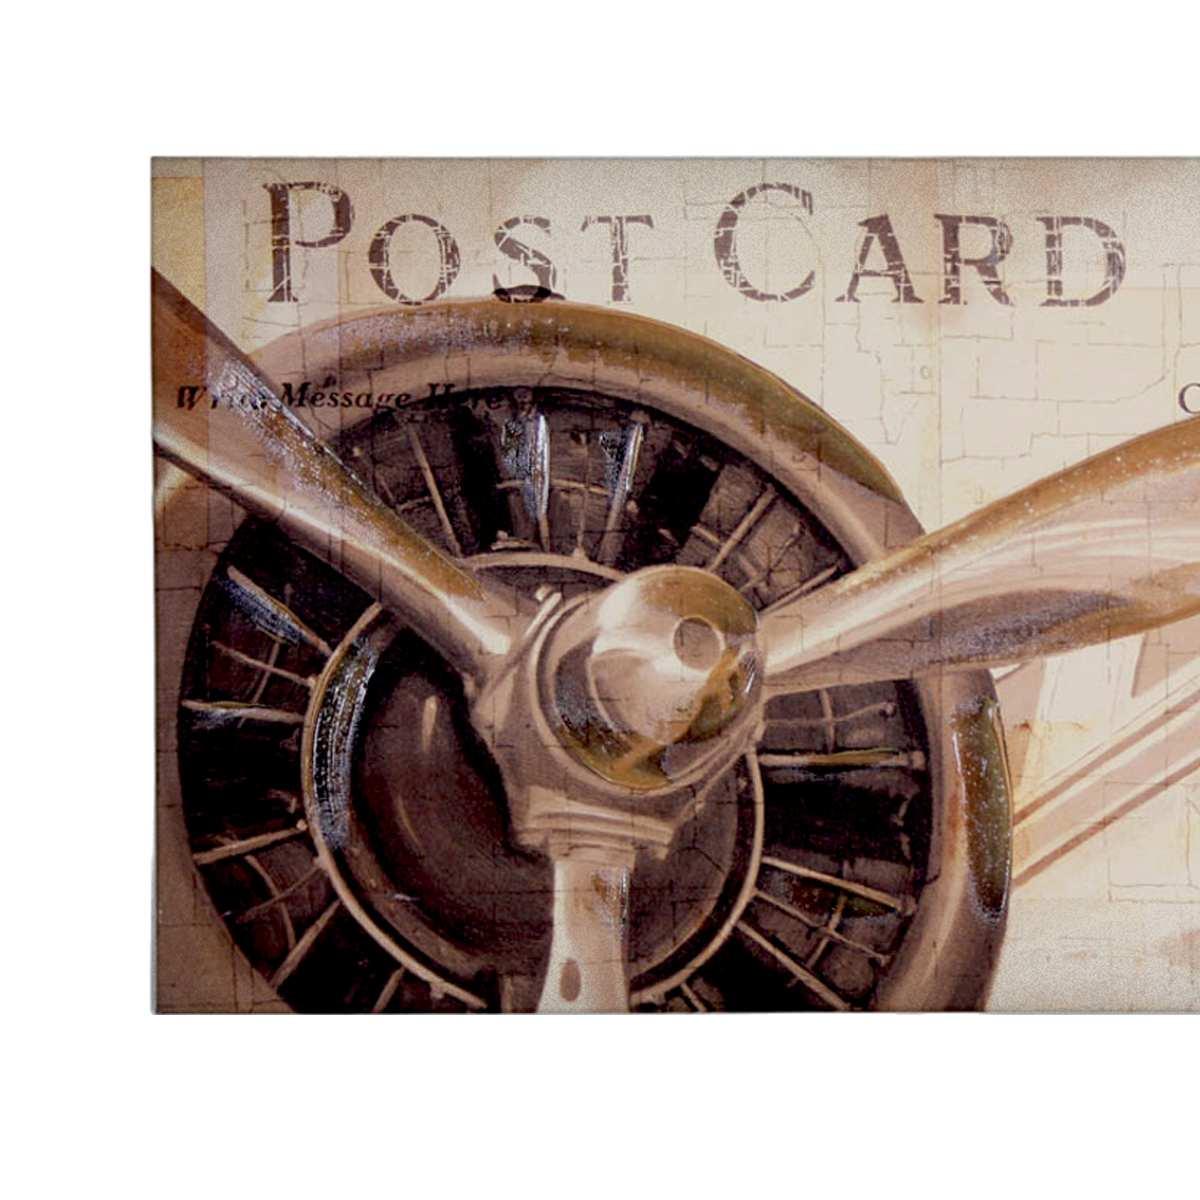 Quadro Tela Post Card con Elica cm.40x80